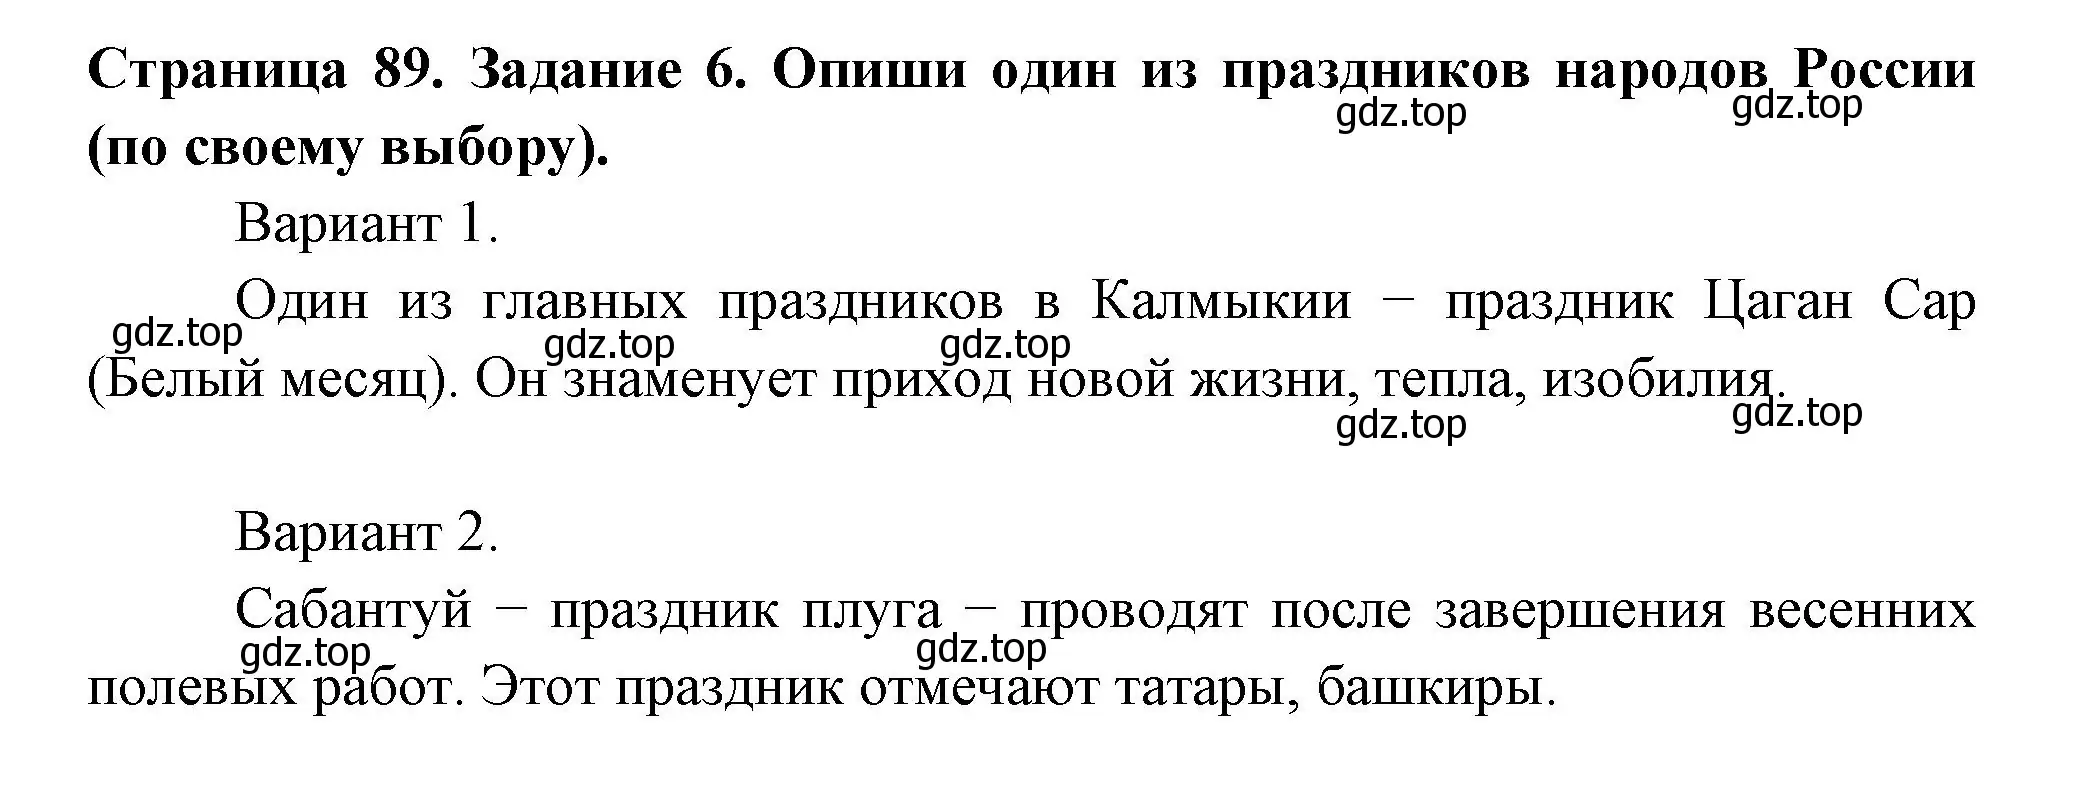 Решение номер 6 (страница 89) гдз по окружающему миру 4 класс Плешаков, Крючкова, проверочные работы